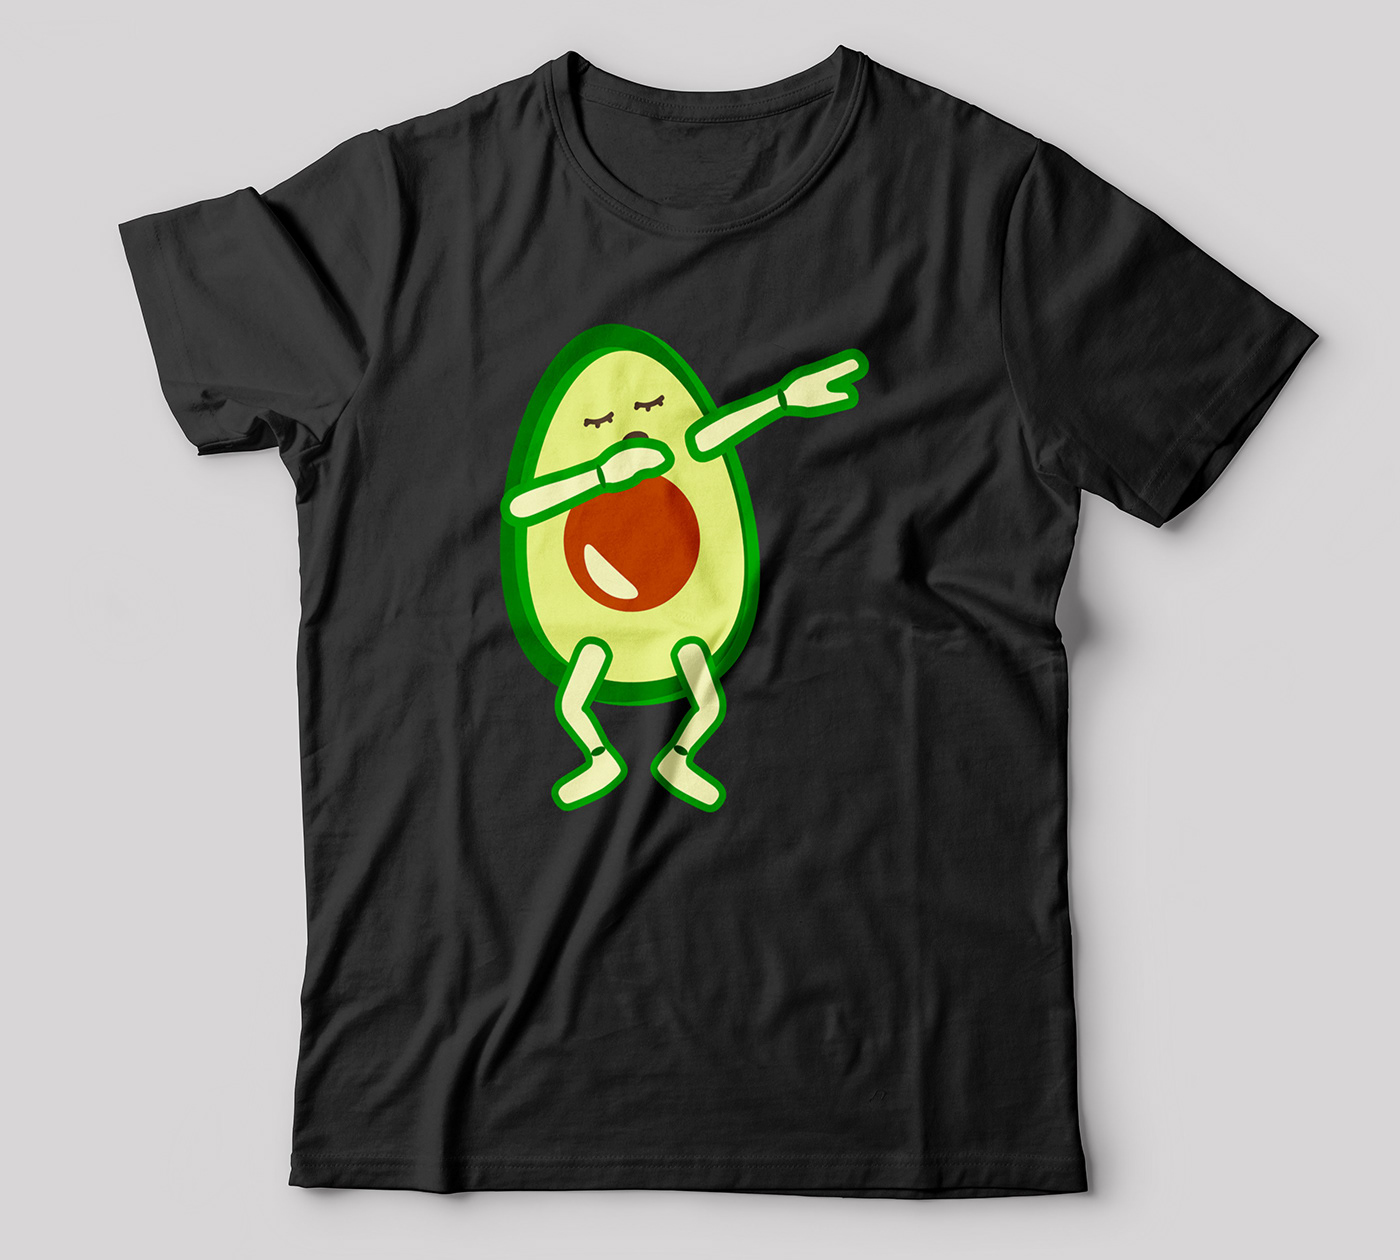 graphic design  T-Shirt Design shirt destign art merch by amazon teespring